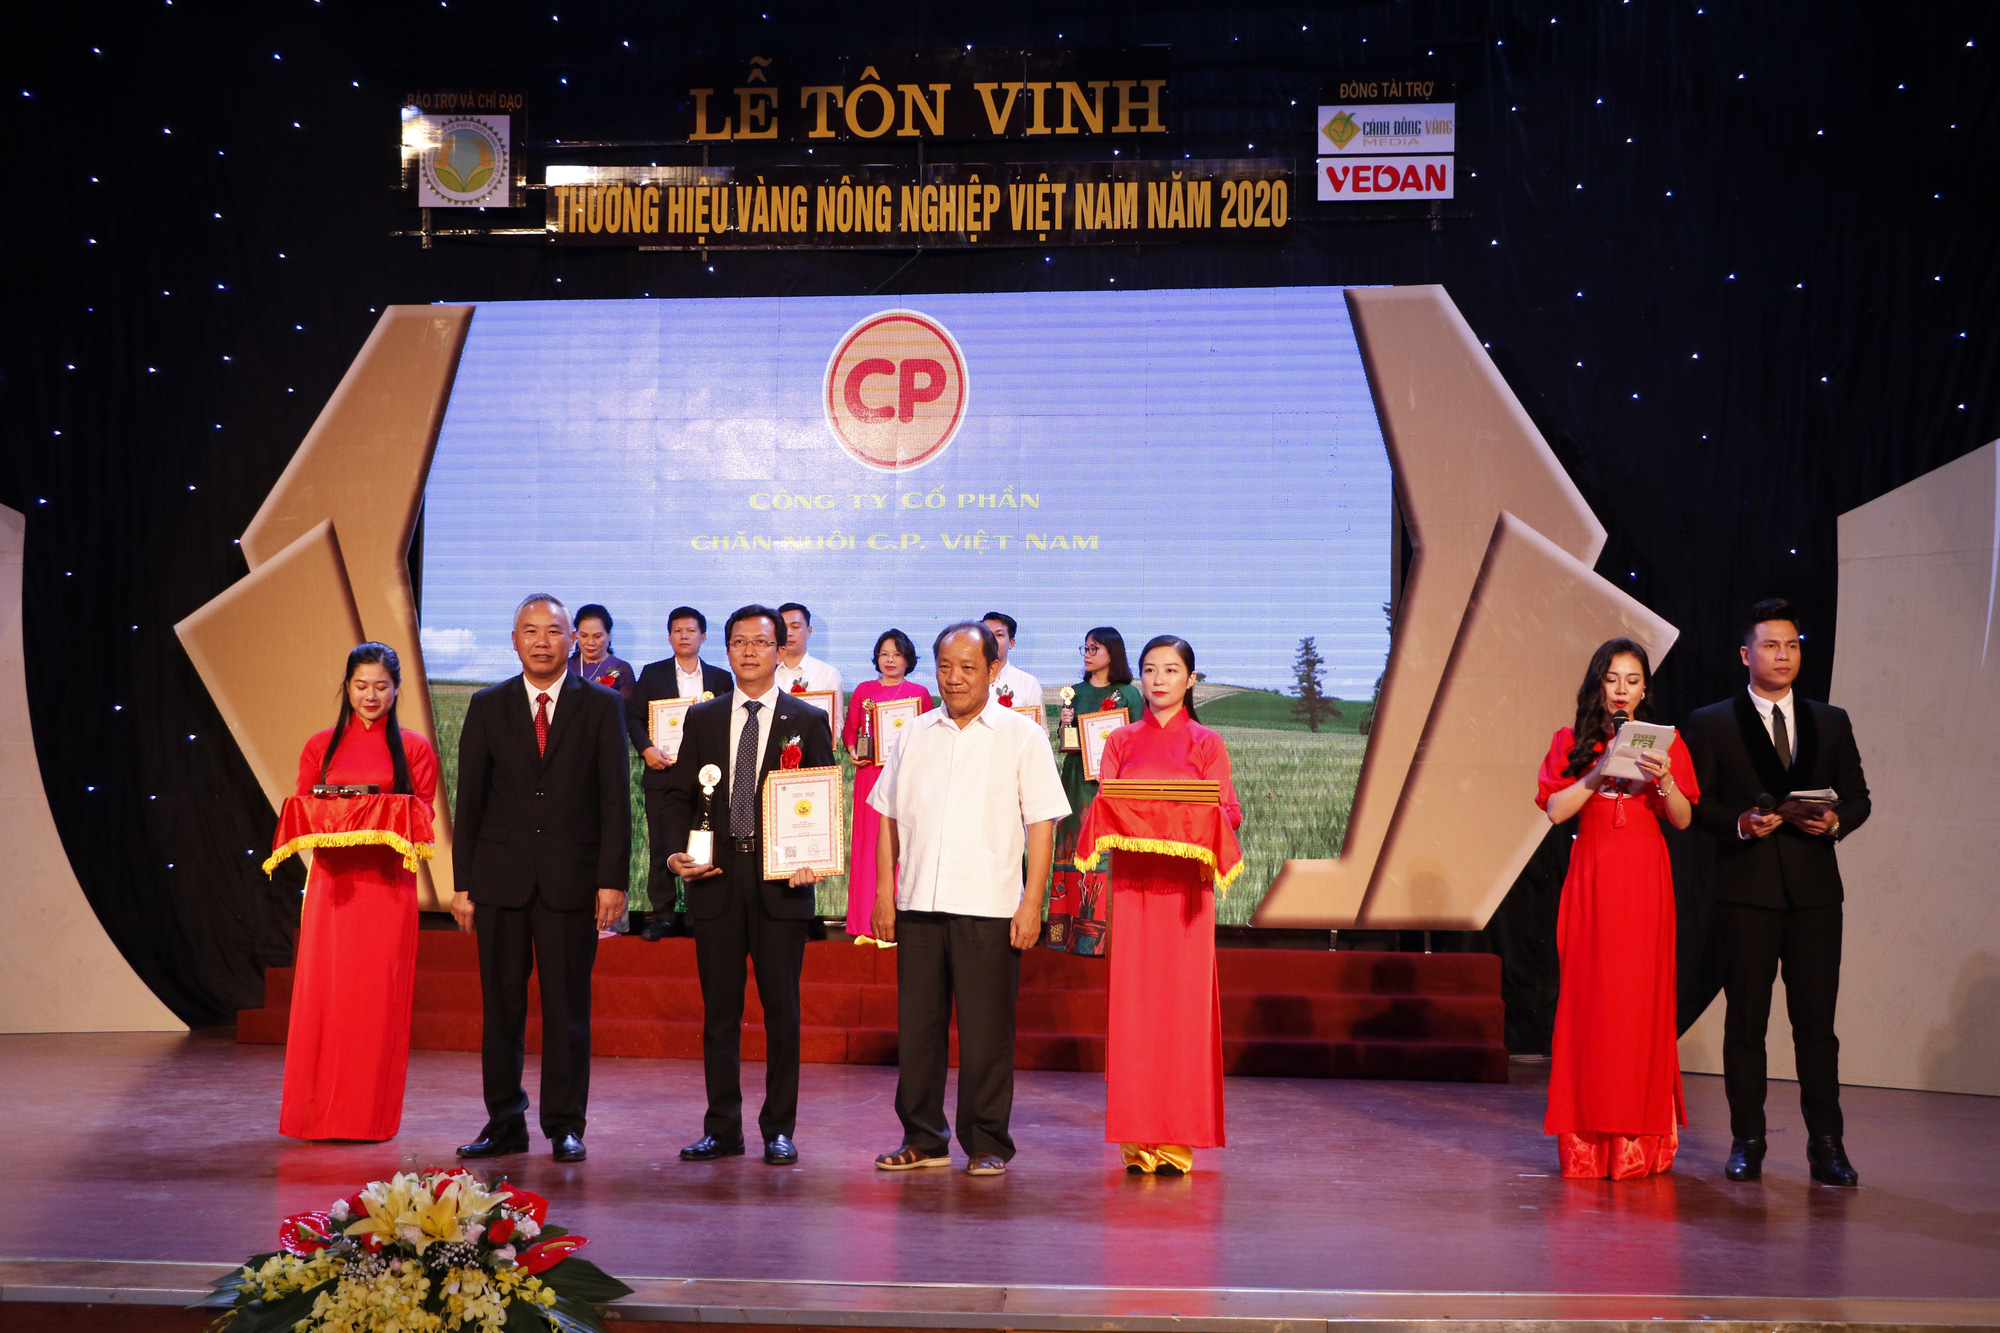 C.P. Việt Nam nhận danh hiệu Thương hiệu Vàng nông nghiệp Việt Nam 2020 - Ảnh 1.